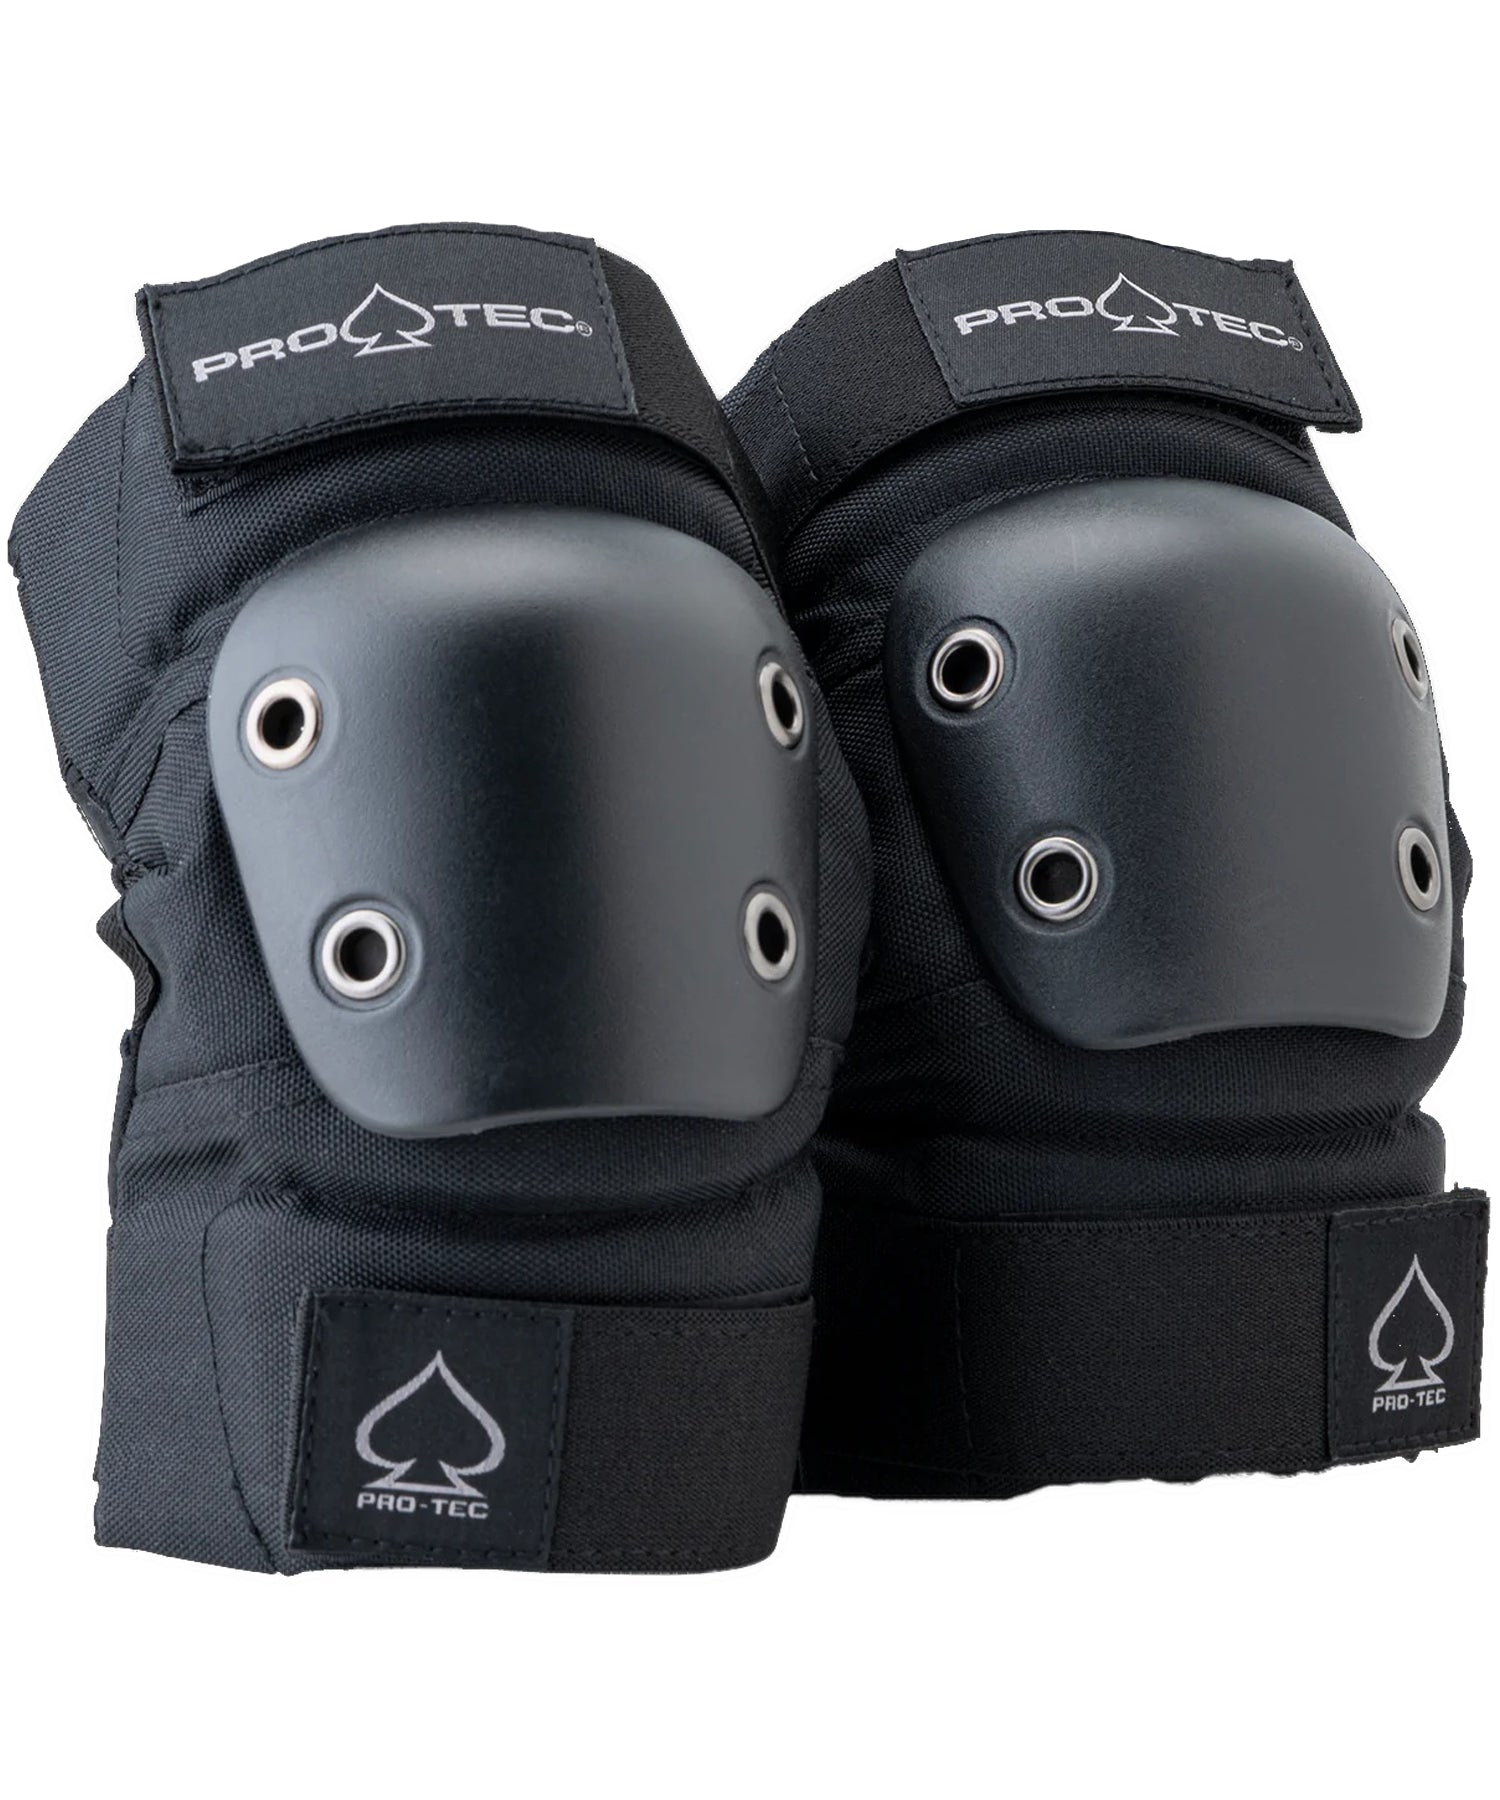 pro-tec-jr-street-gesr-3-pack-open-back-protecciones de color negro para niños-tus-rodillas-codos y muñecas estaran protegidas contra golpes y abrasiones.